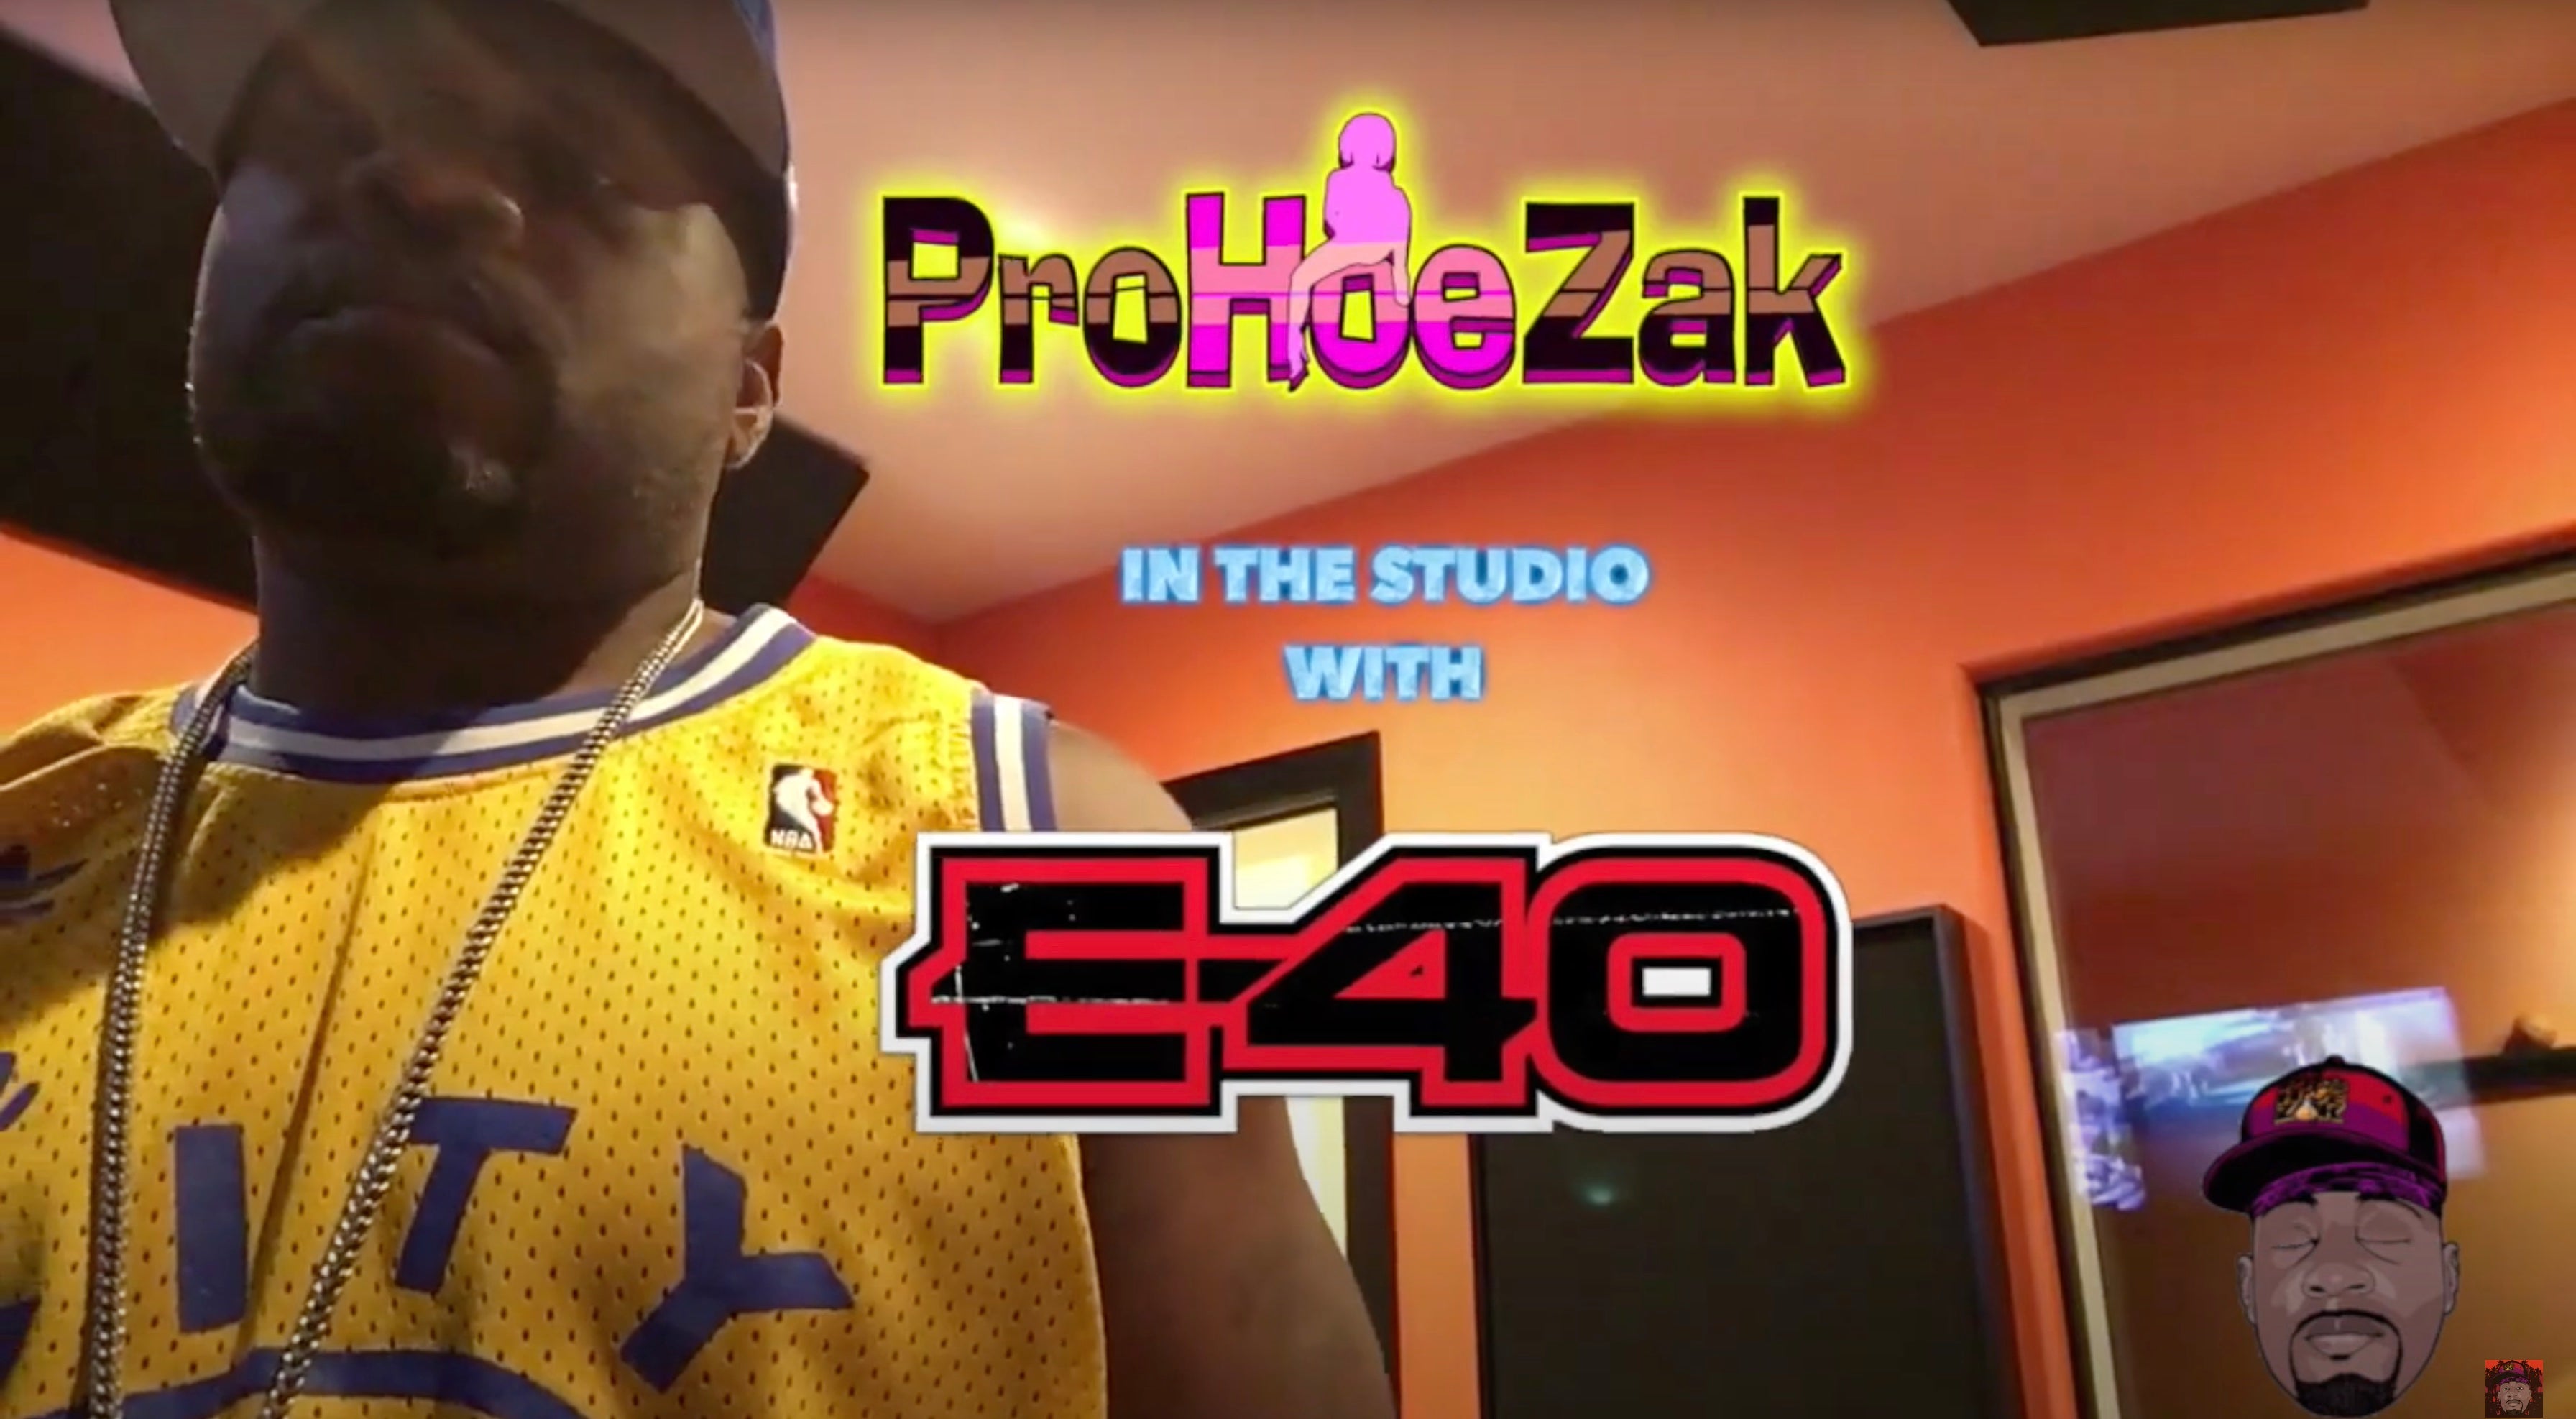 Load video: ProHoeZak in the studio with E-40